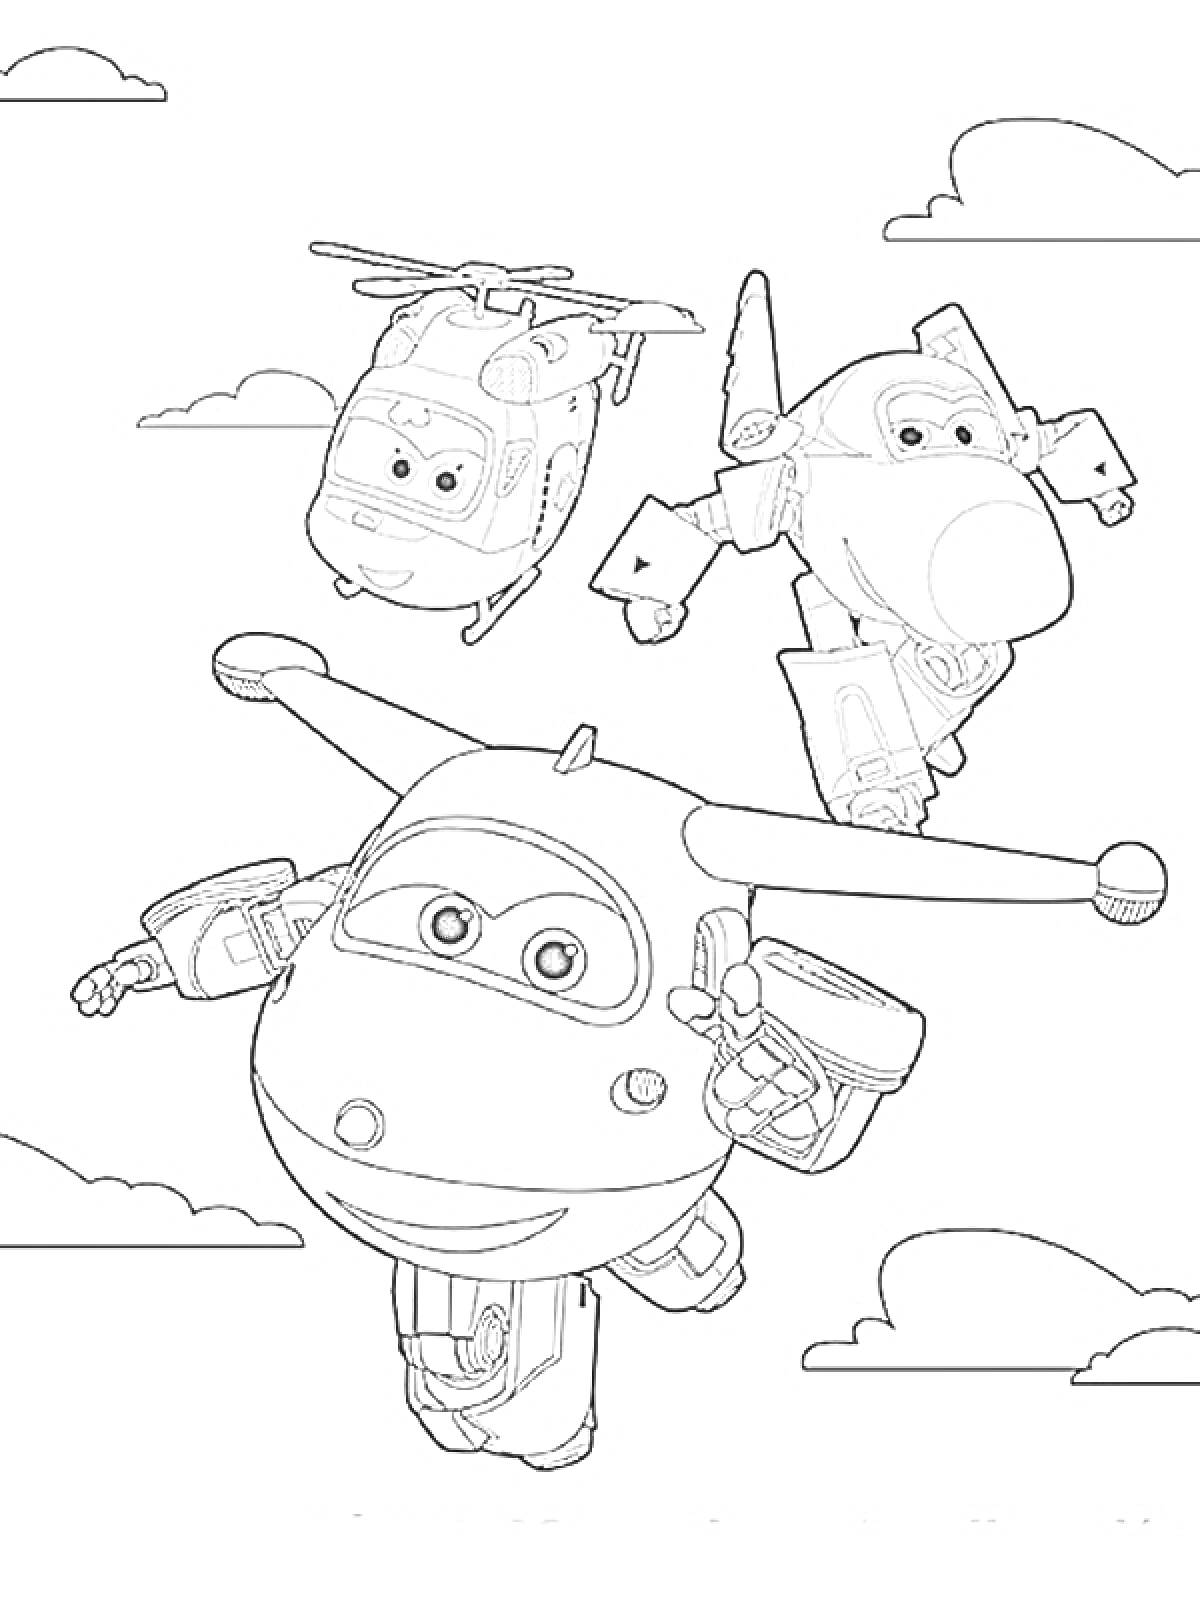 Супер крылья - три персонажа: самолет, вертолет и истребитель, облака на заднем фоне